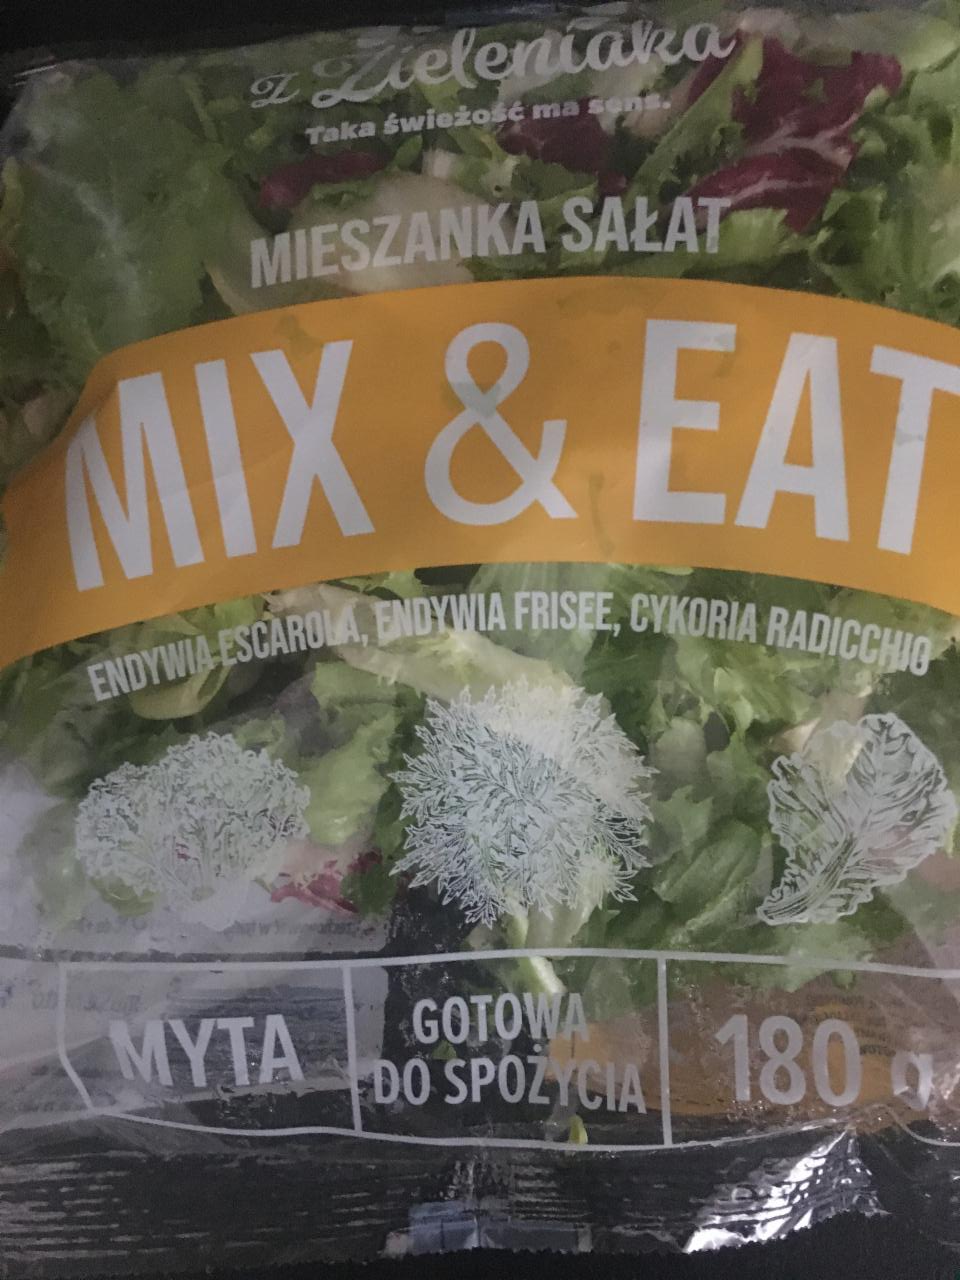 Fotografie - Mieszanka sałat mix & eat z Zieleniaka